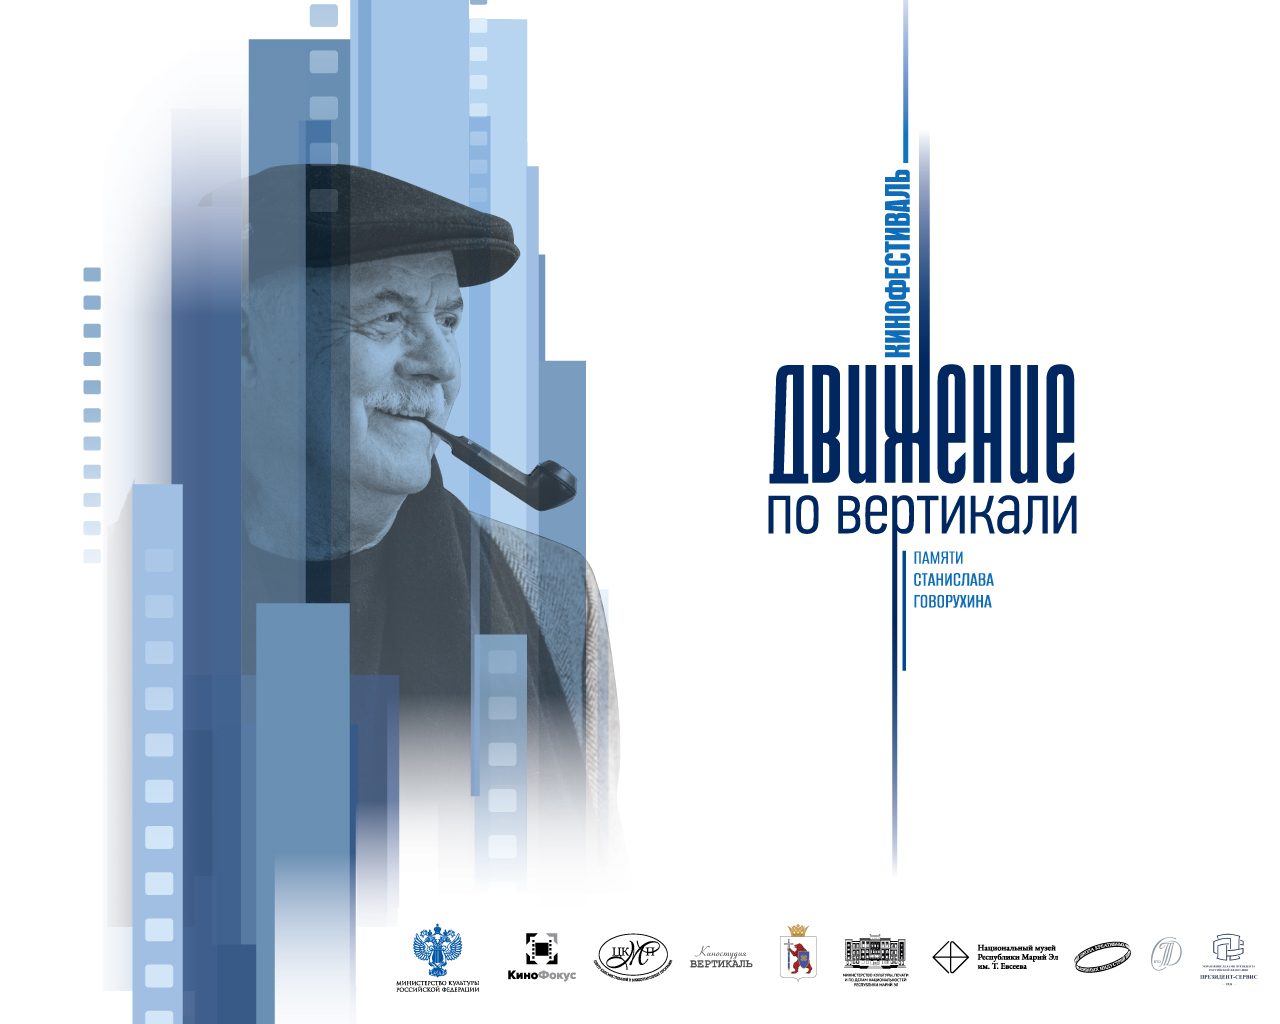 В Республике Марий Эл состоится II этап Кинофестиваля «Движение по вертикали» памяти Станислава Говорухина